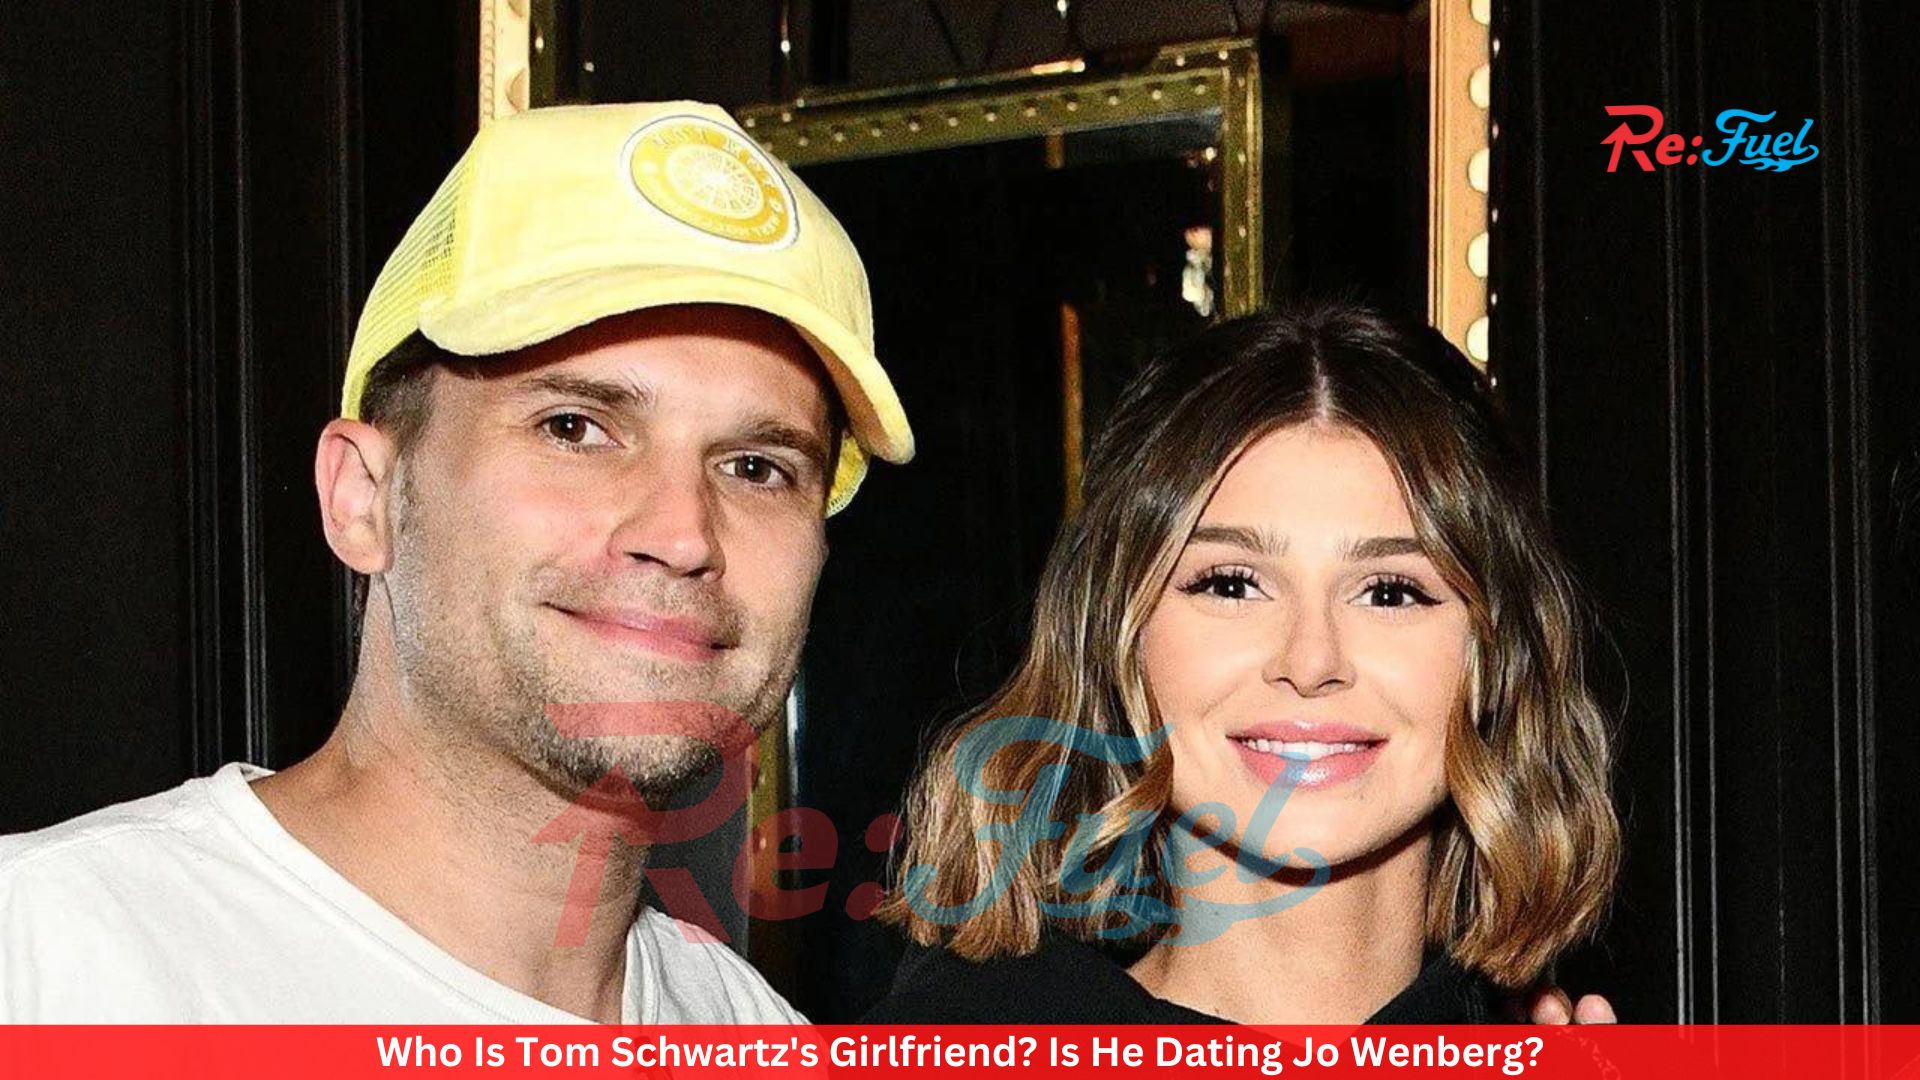 Who Is Tom Schwartz's Girlfriend? Is He Dating Jo Wenberg?